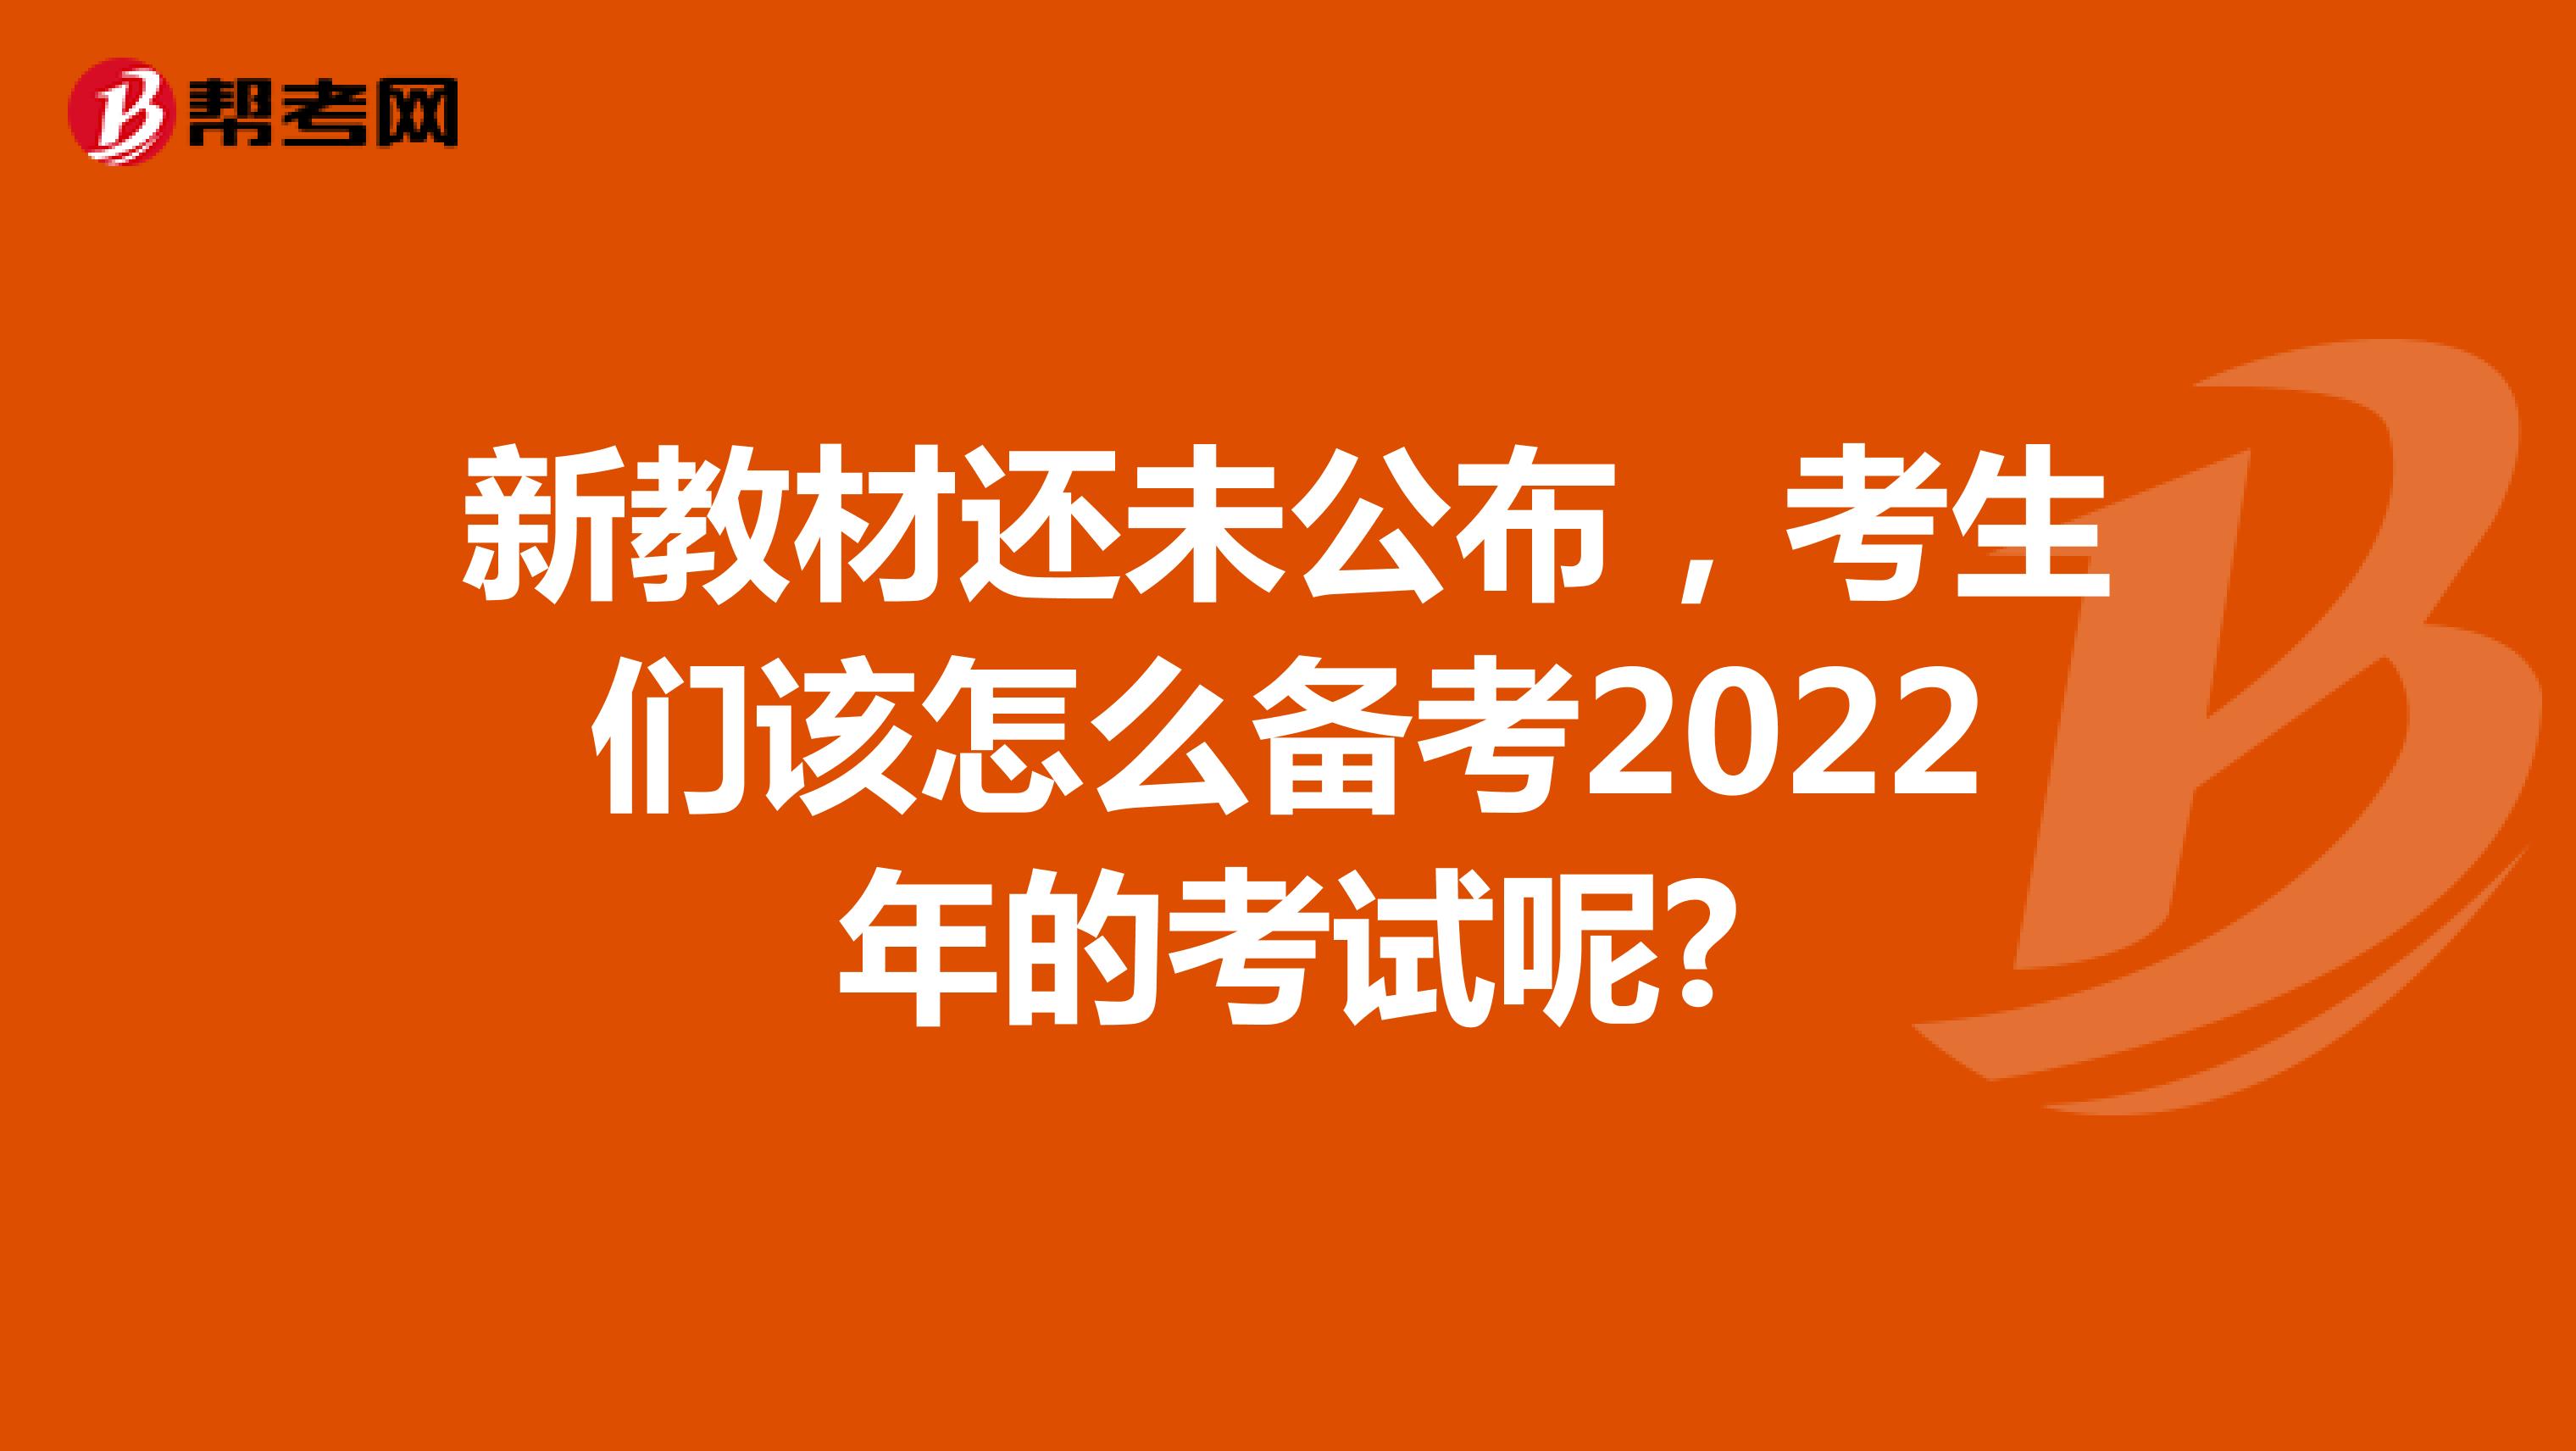 新教材还未公布，考生们该怎么备考2022年的考试呢?